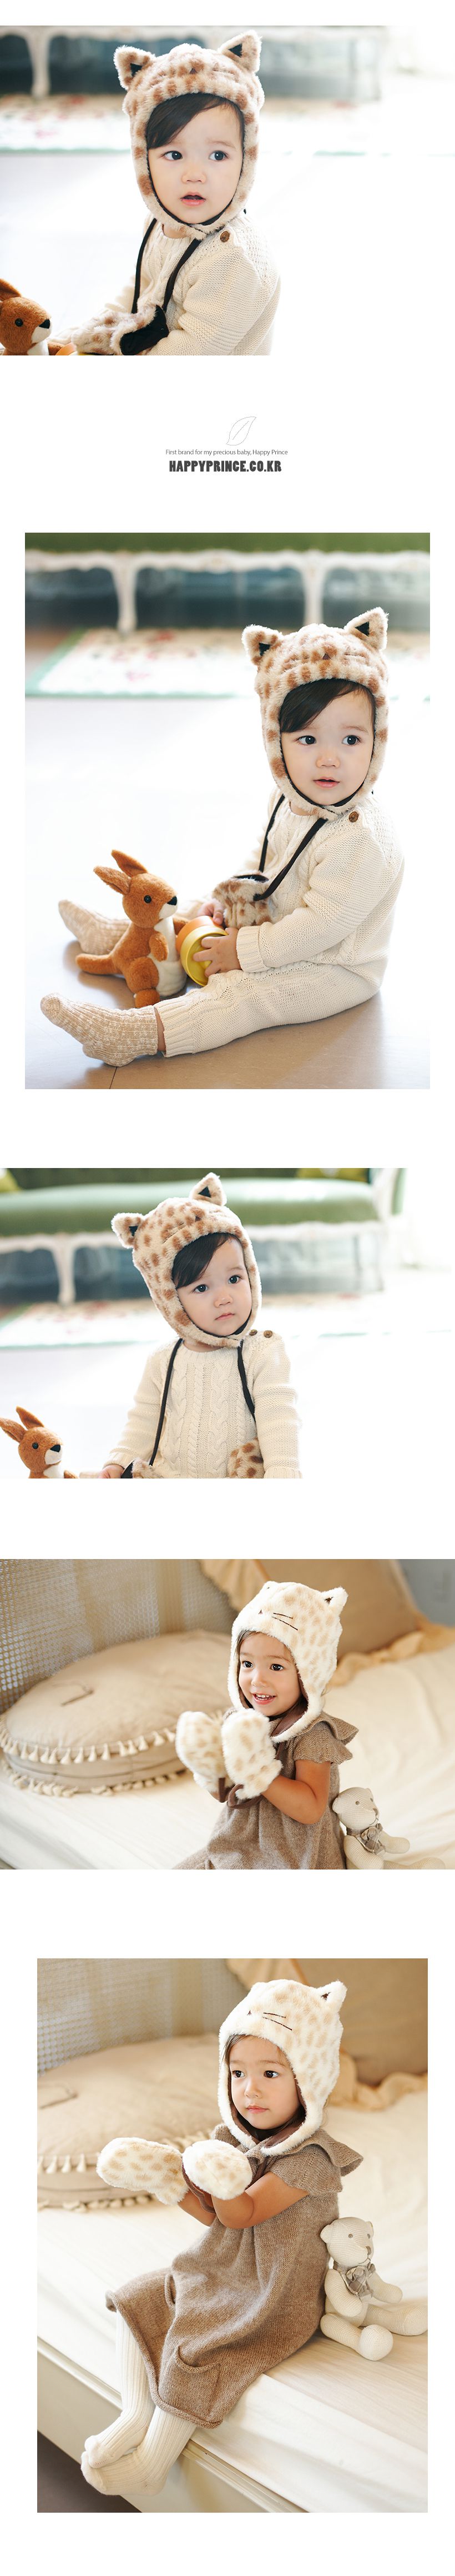 【特價】韓國製可愛小貓護耳保暖帽(12m~18m)